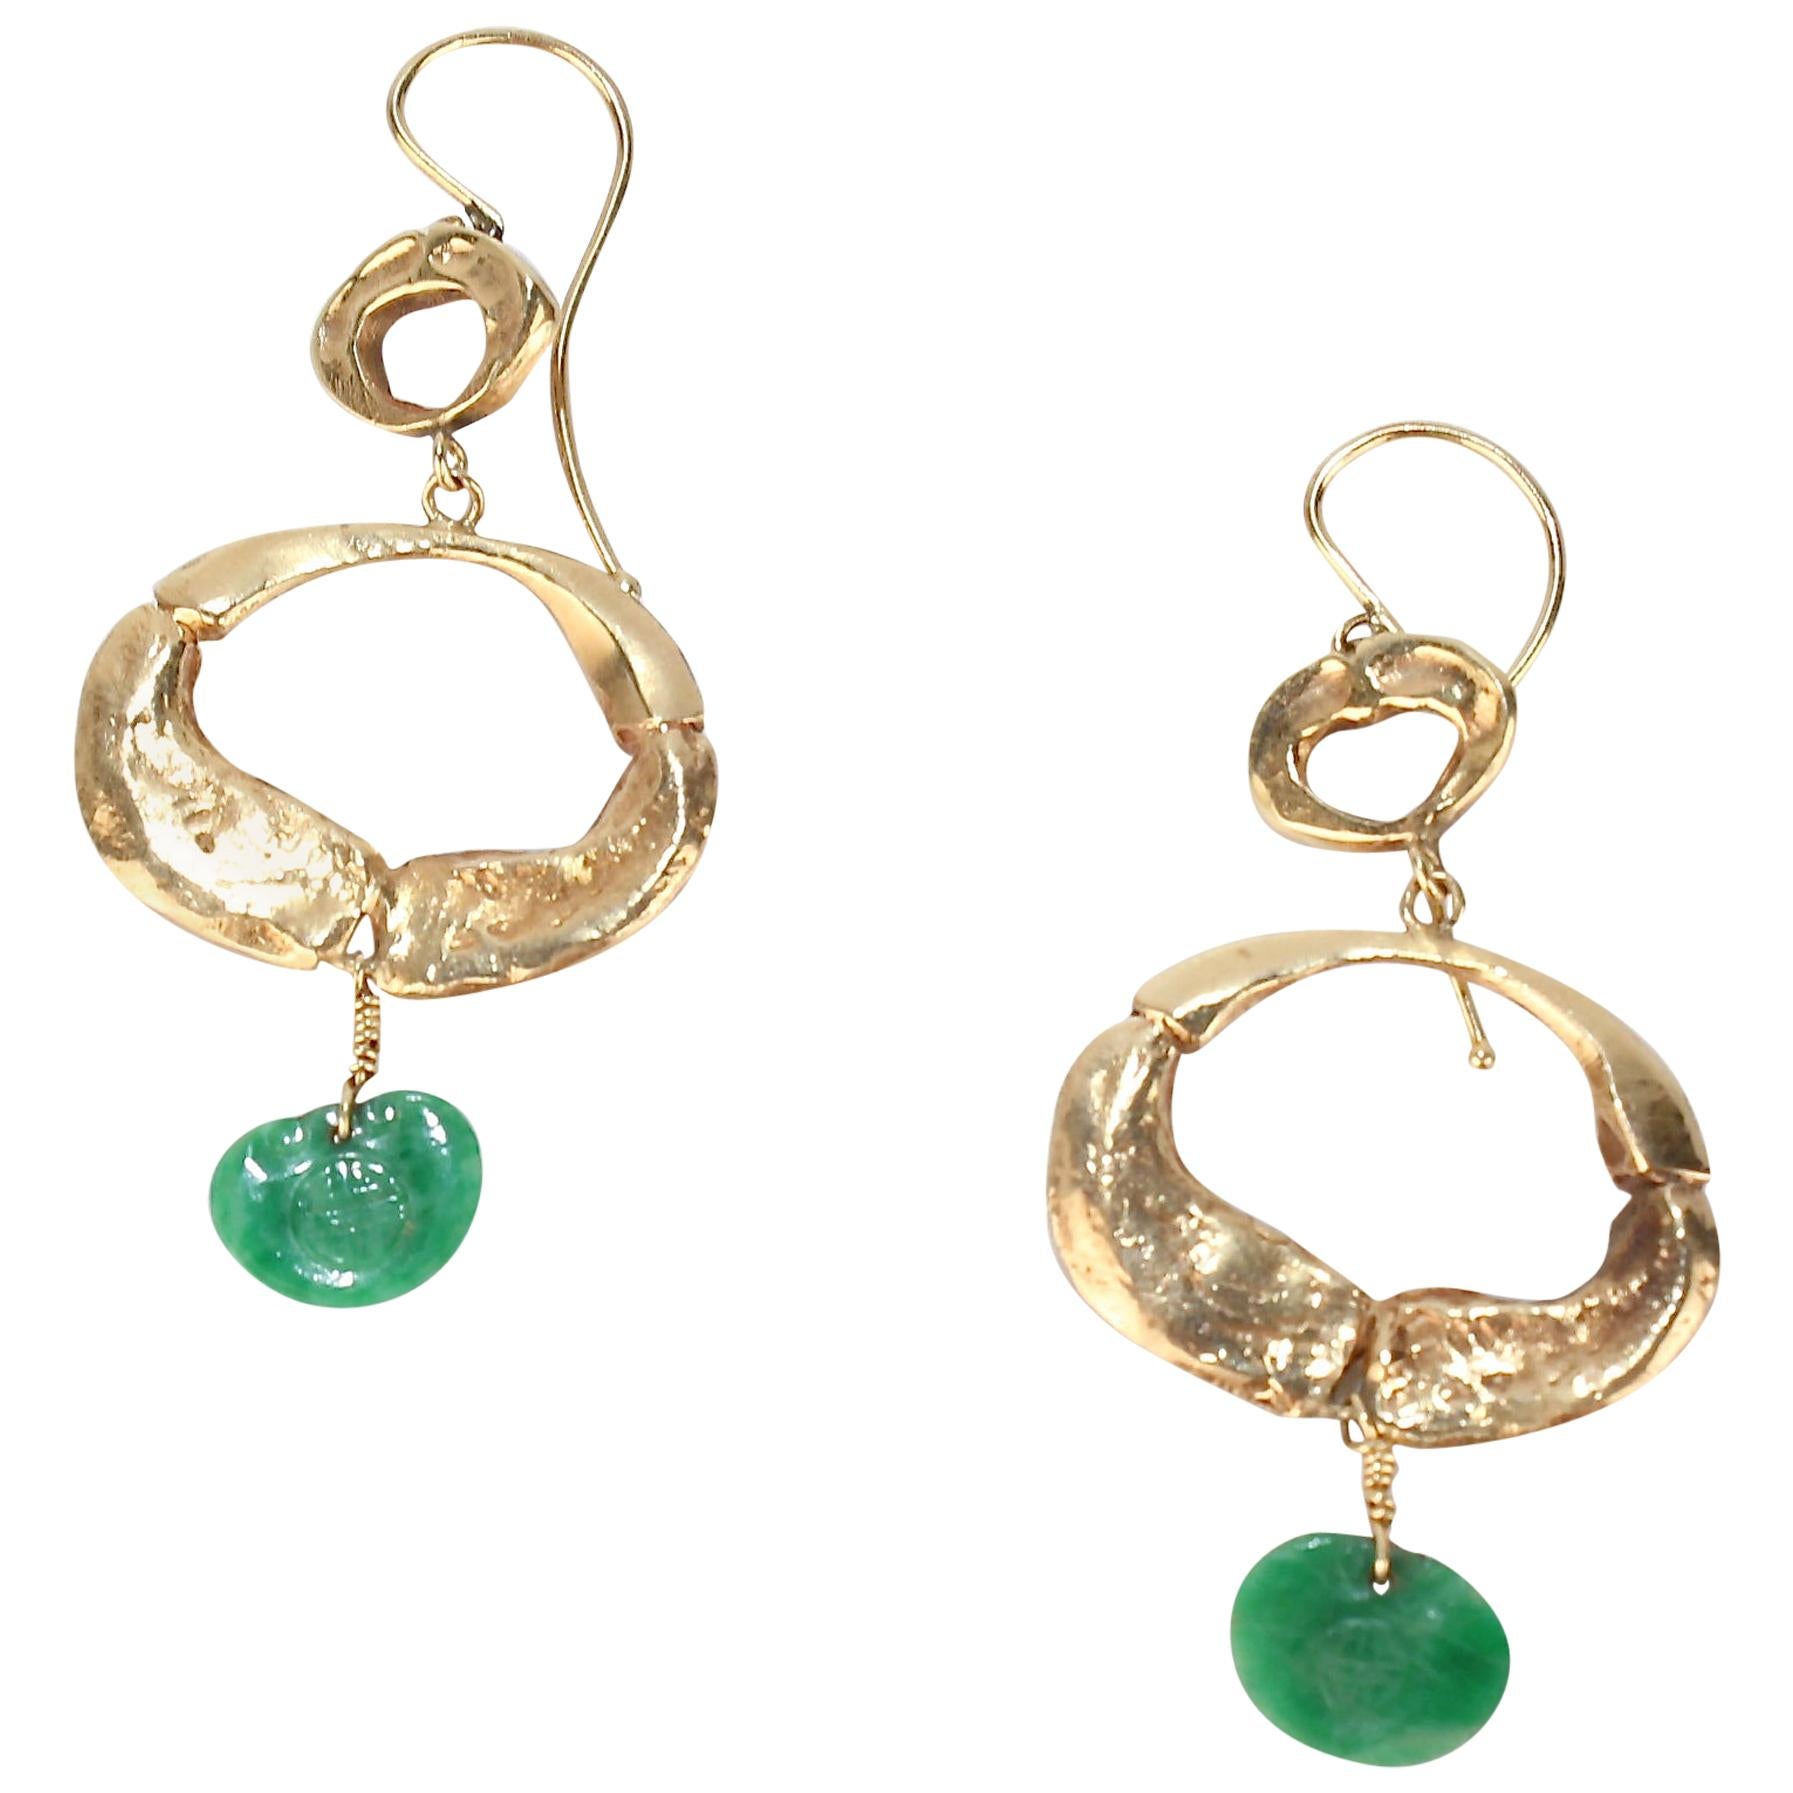 Pair of Wesley Emmons Organic Modern 14K Gold and Jade Pendant Earrings